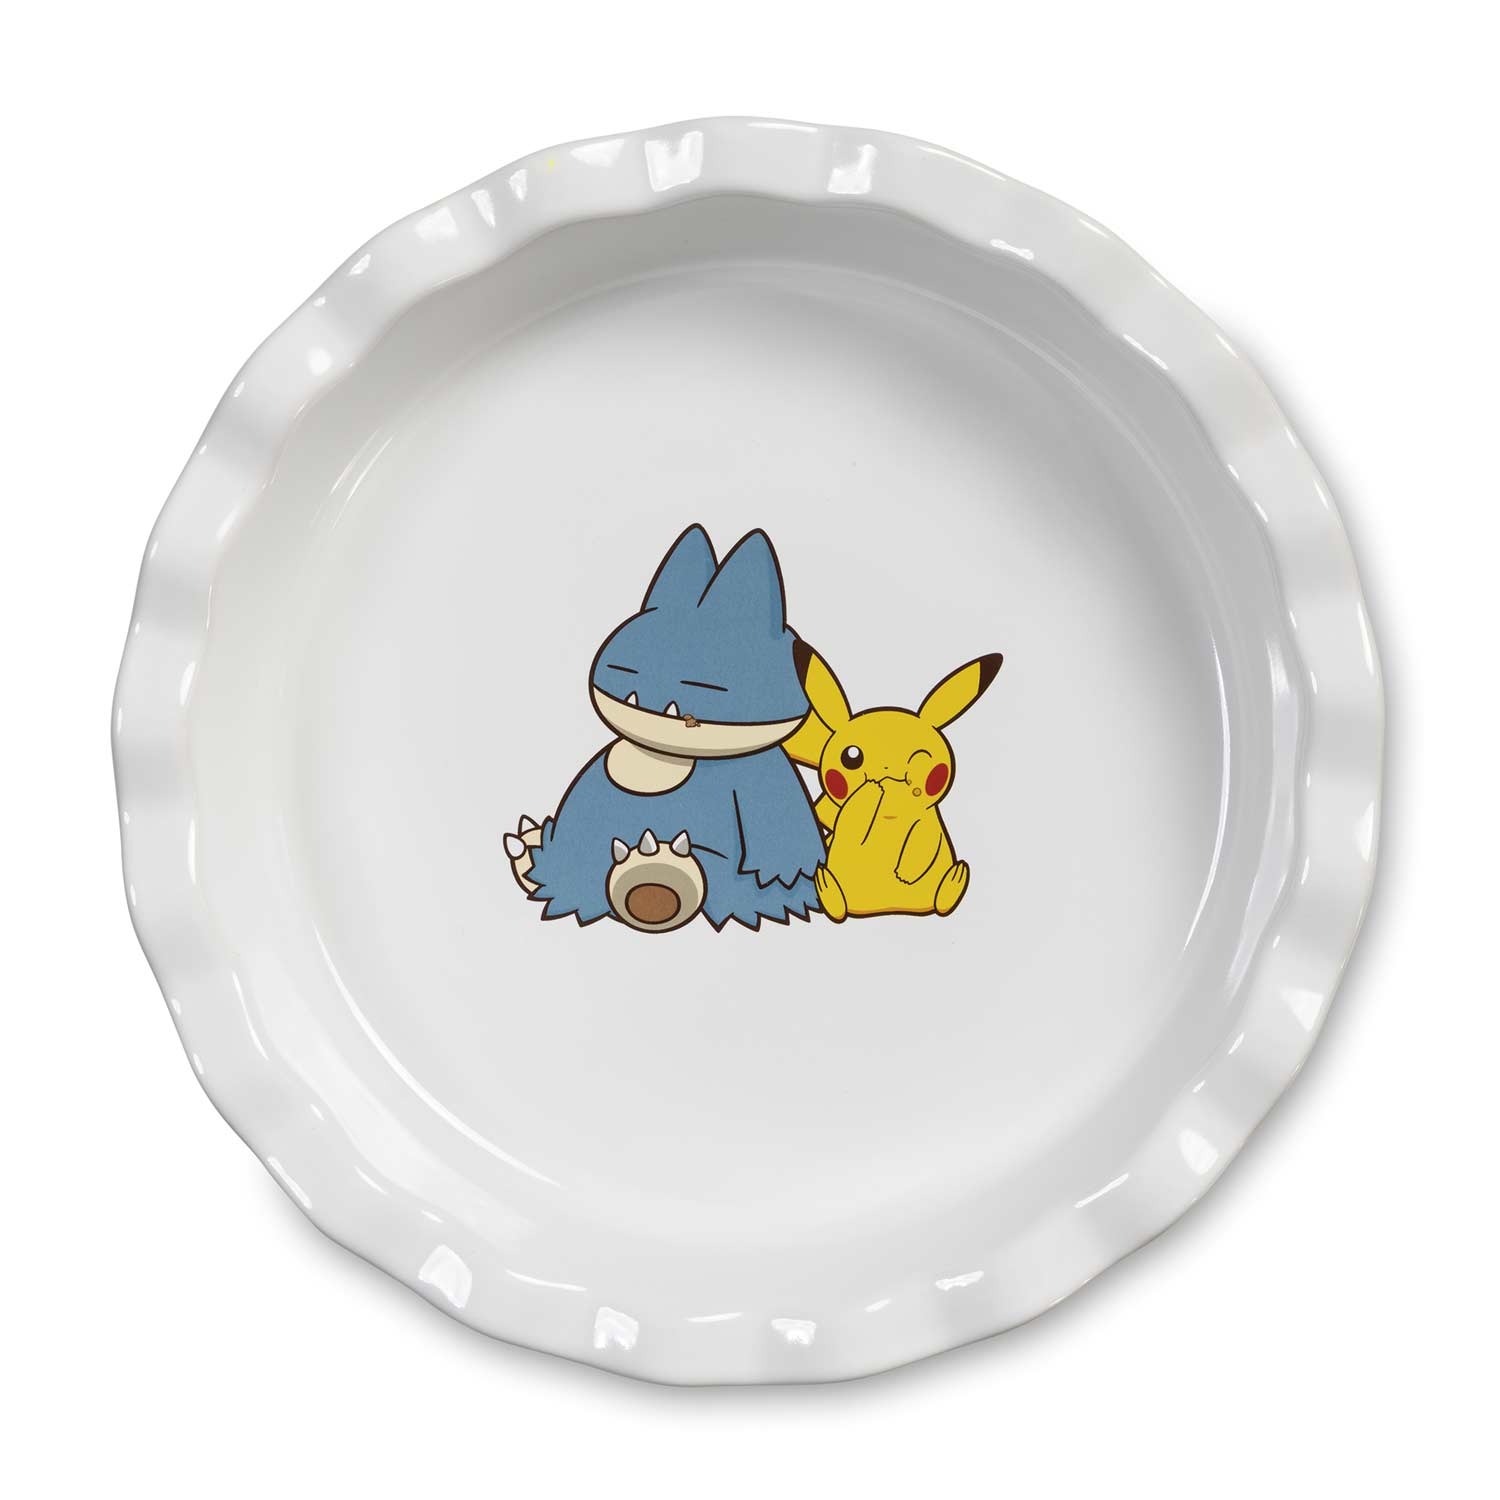 Munchlax and Pikachu pie dish